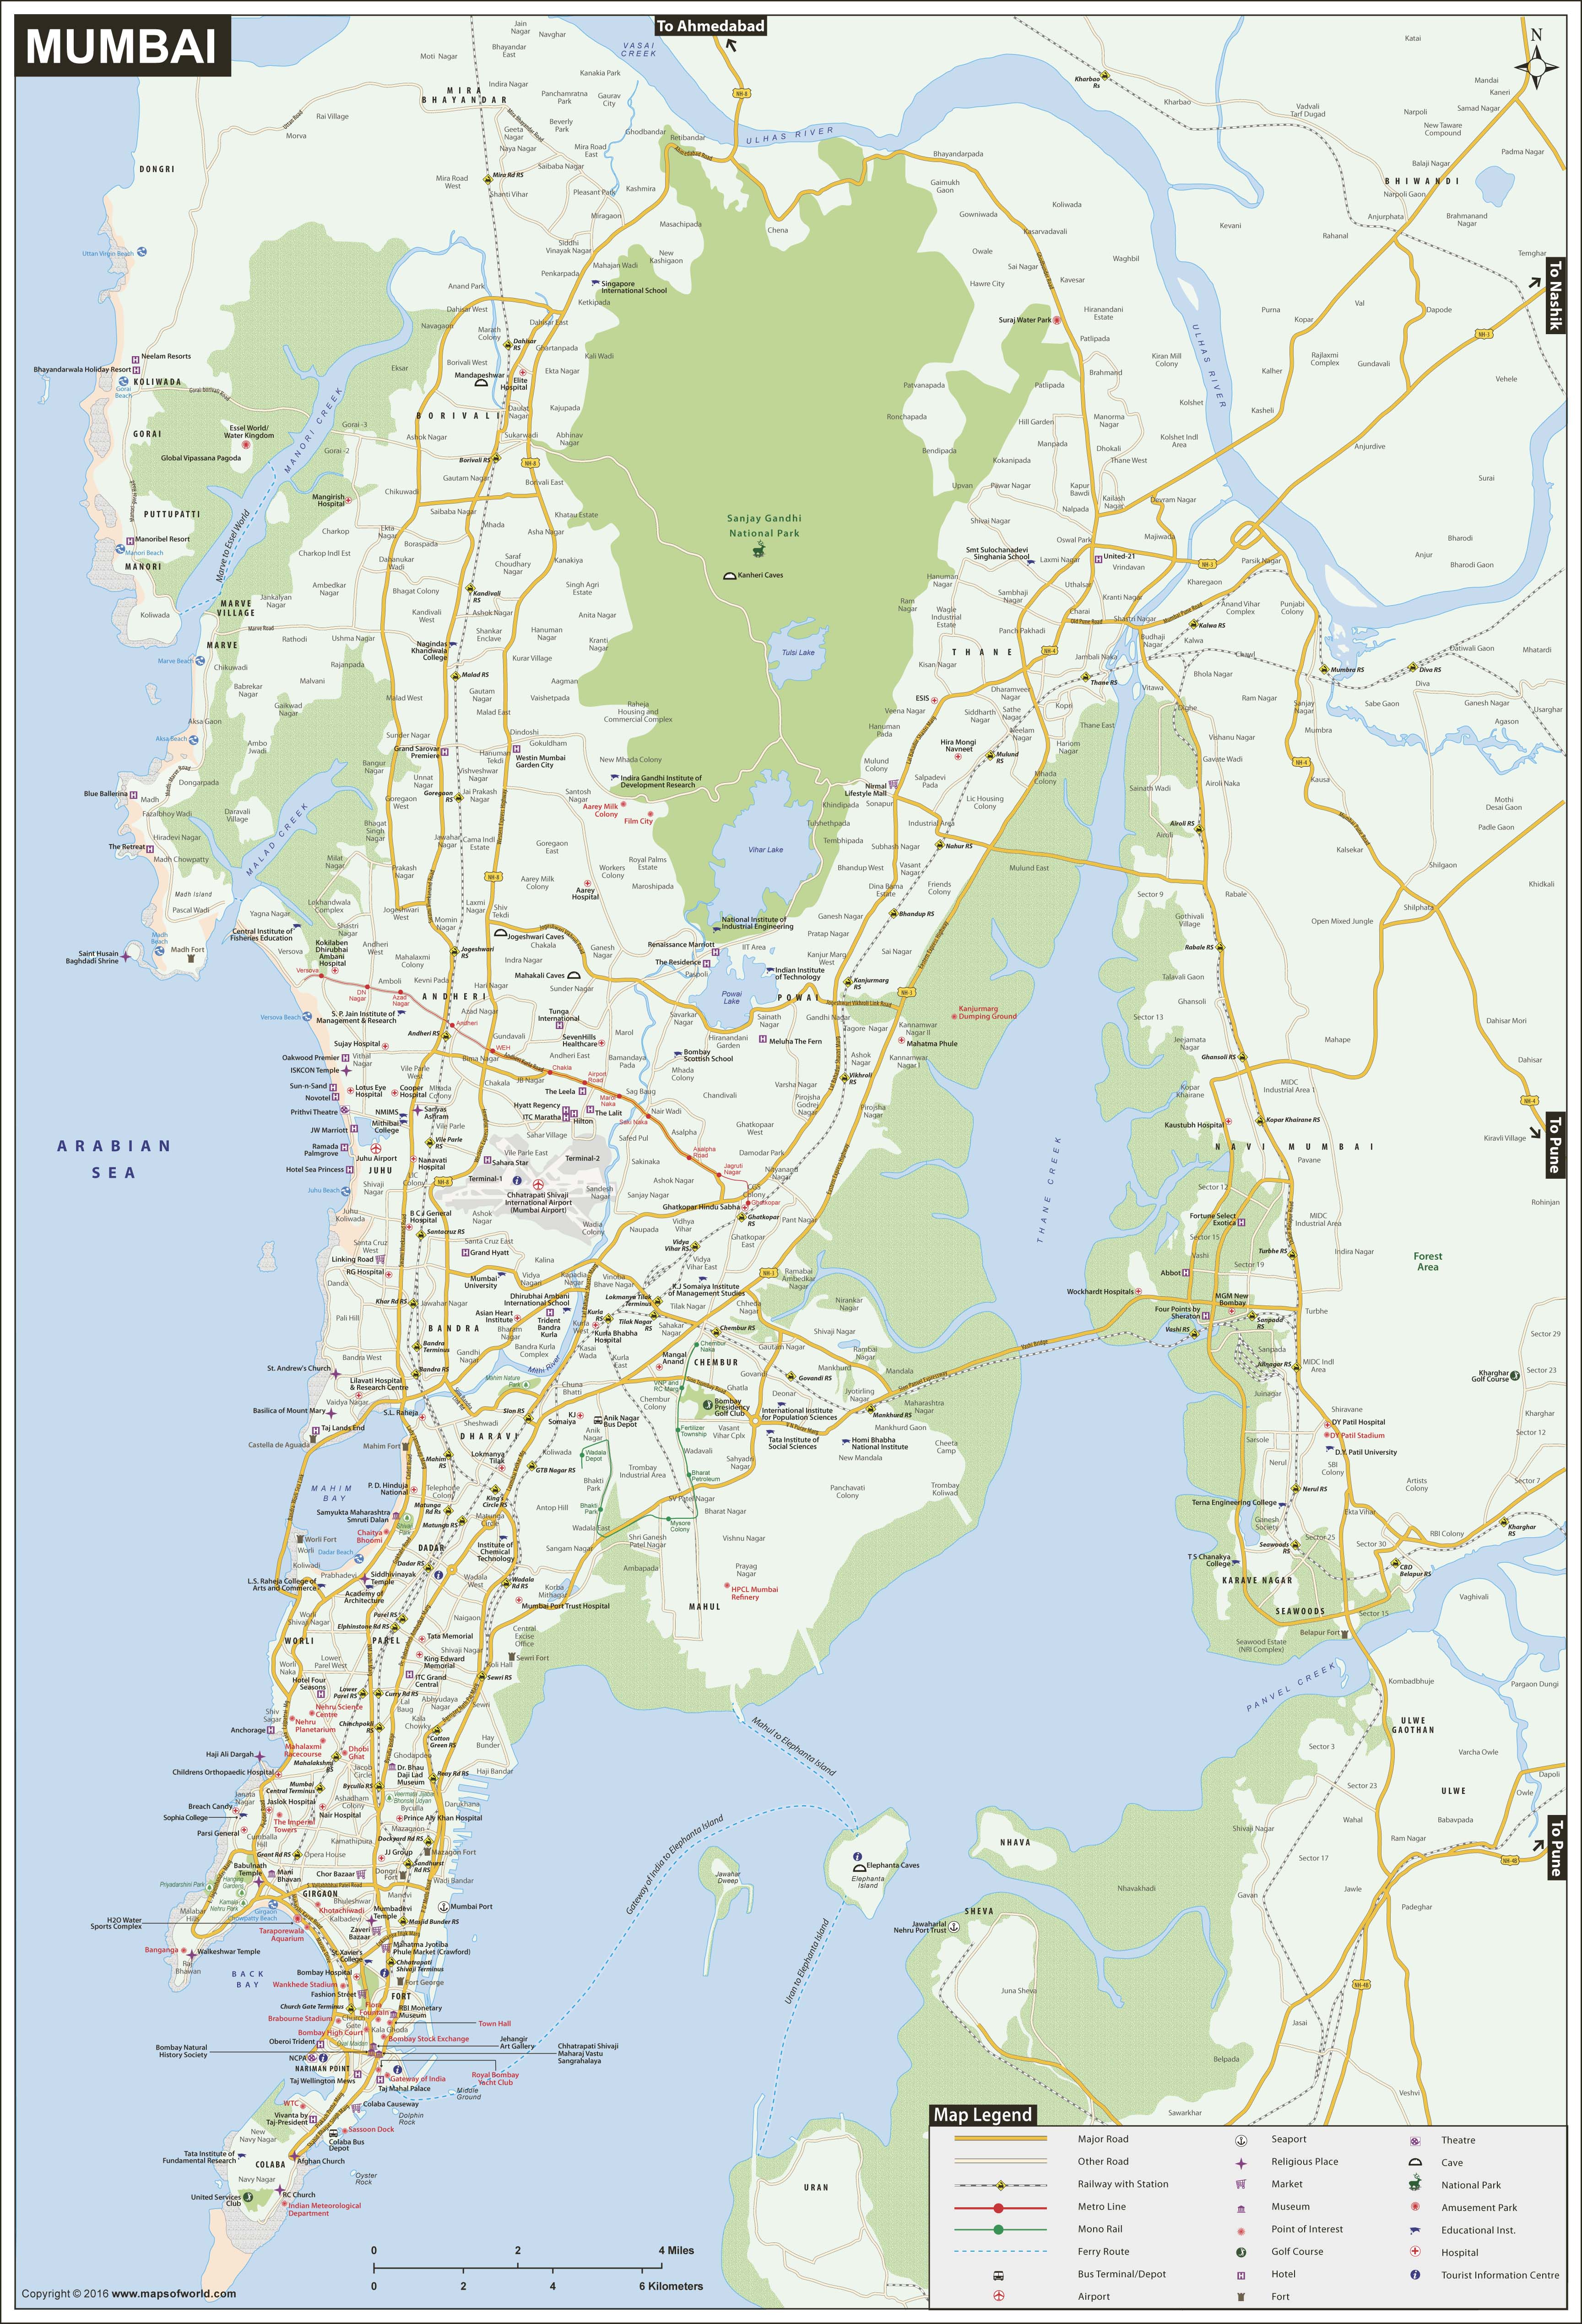 Mumbai Wall Map by Maps of World - MapSales